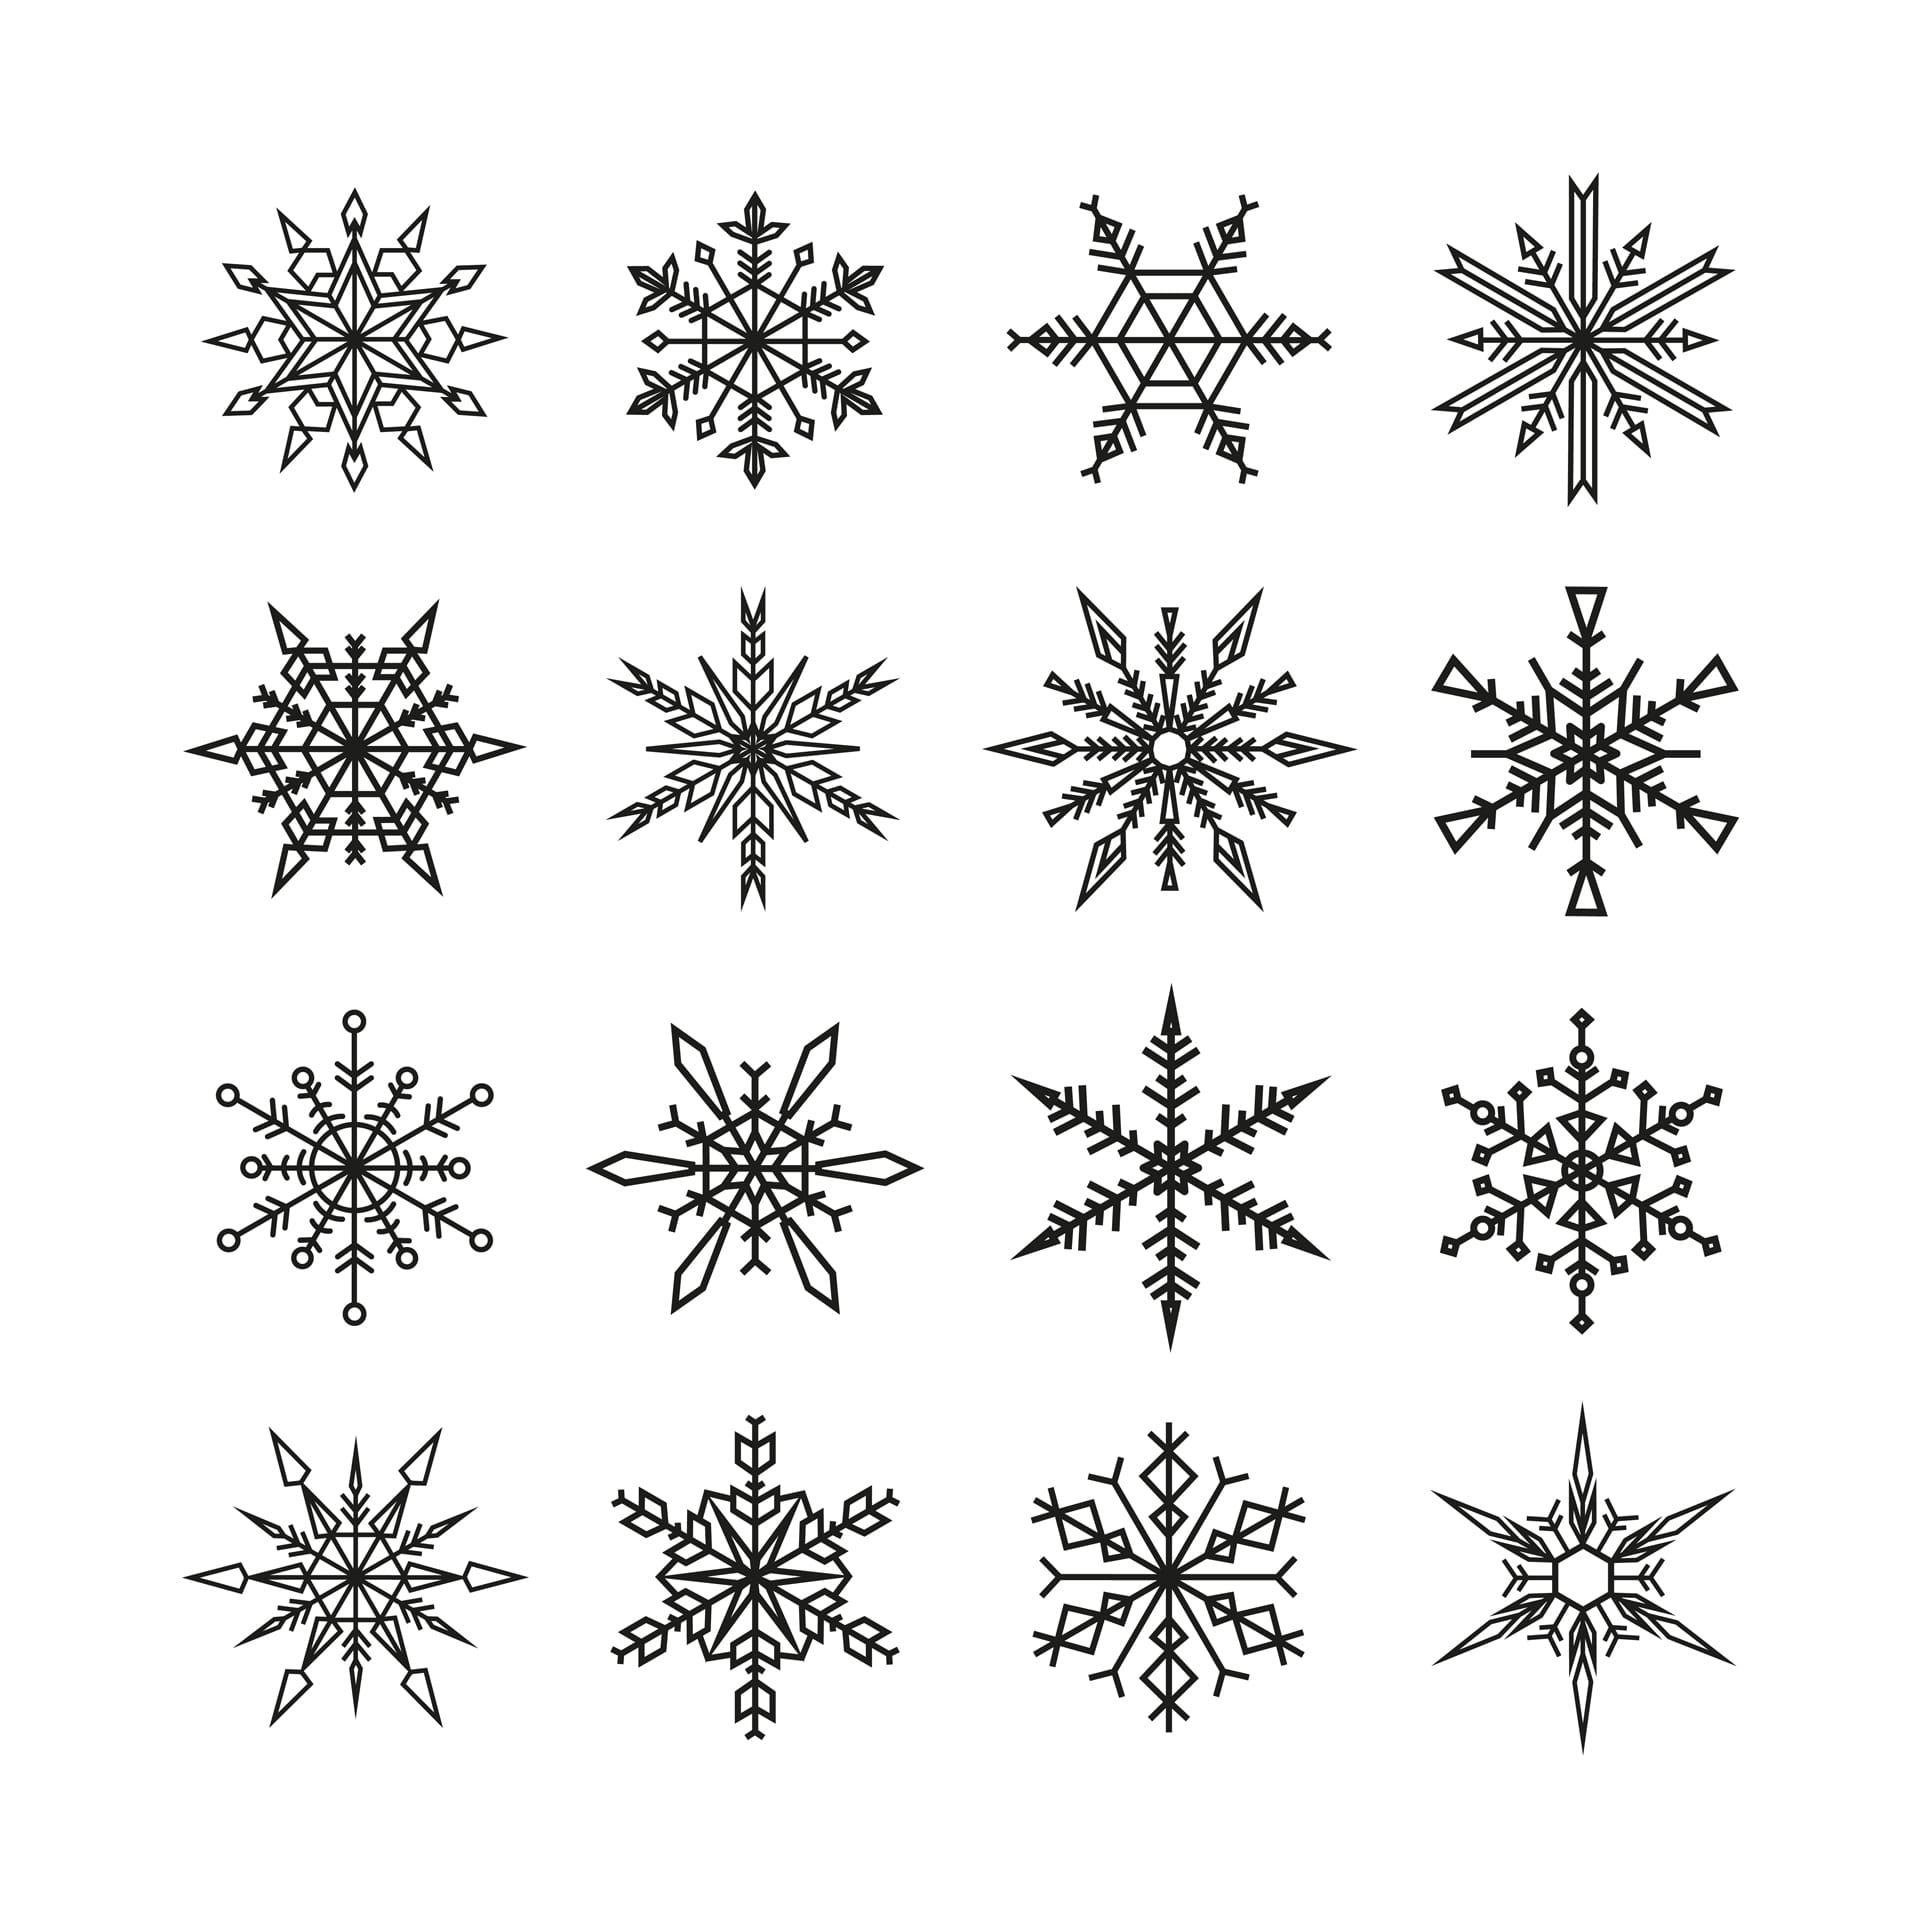 Snowflake clipart set snowflakes